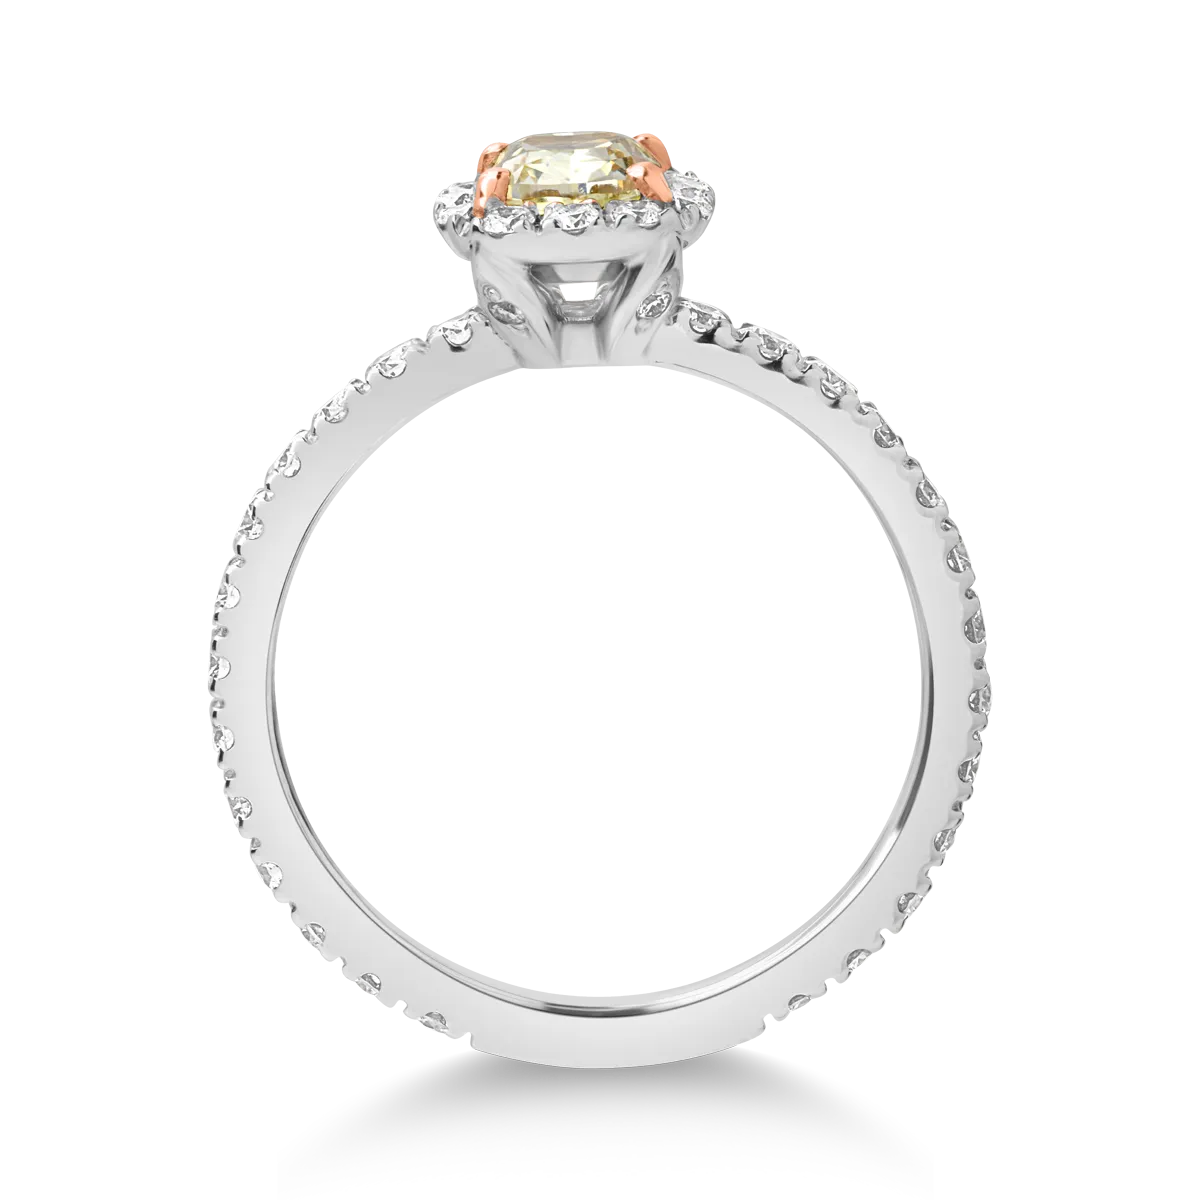 18 karátos fehérarany gyűrű 0.7 karátos díszes gyémánttal és 0.7 karátos gyémántokkal